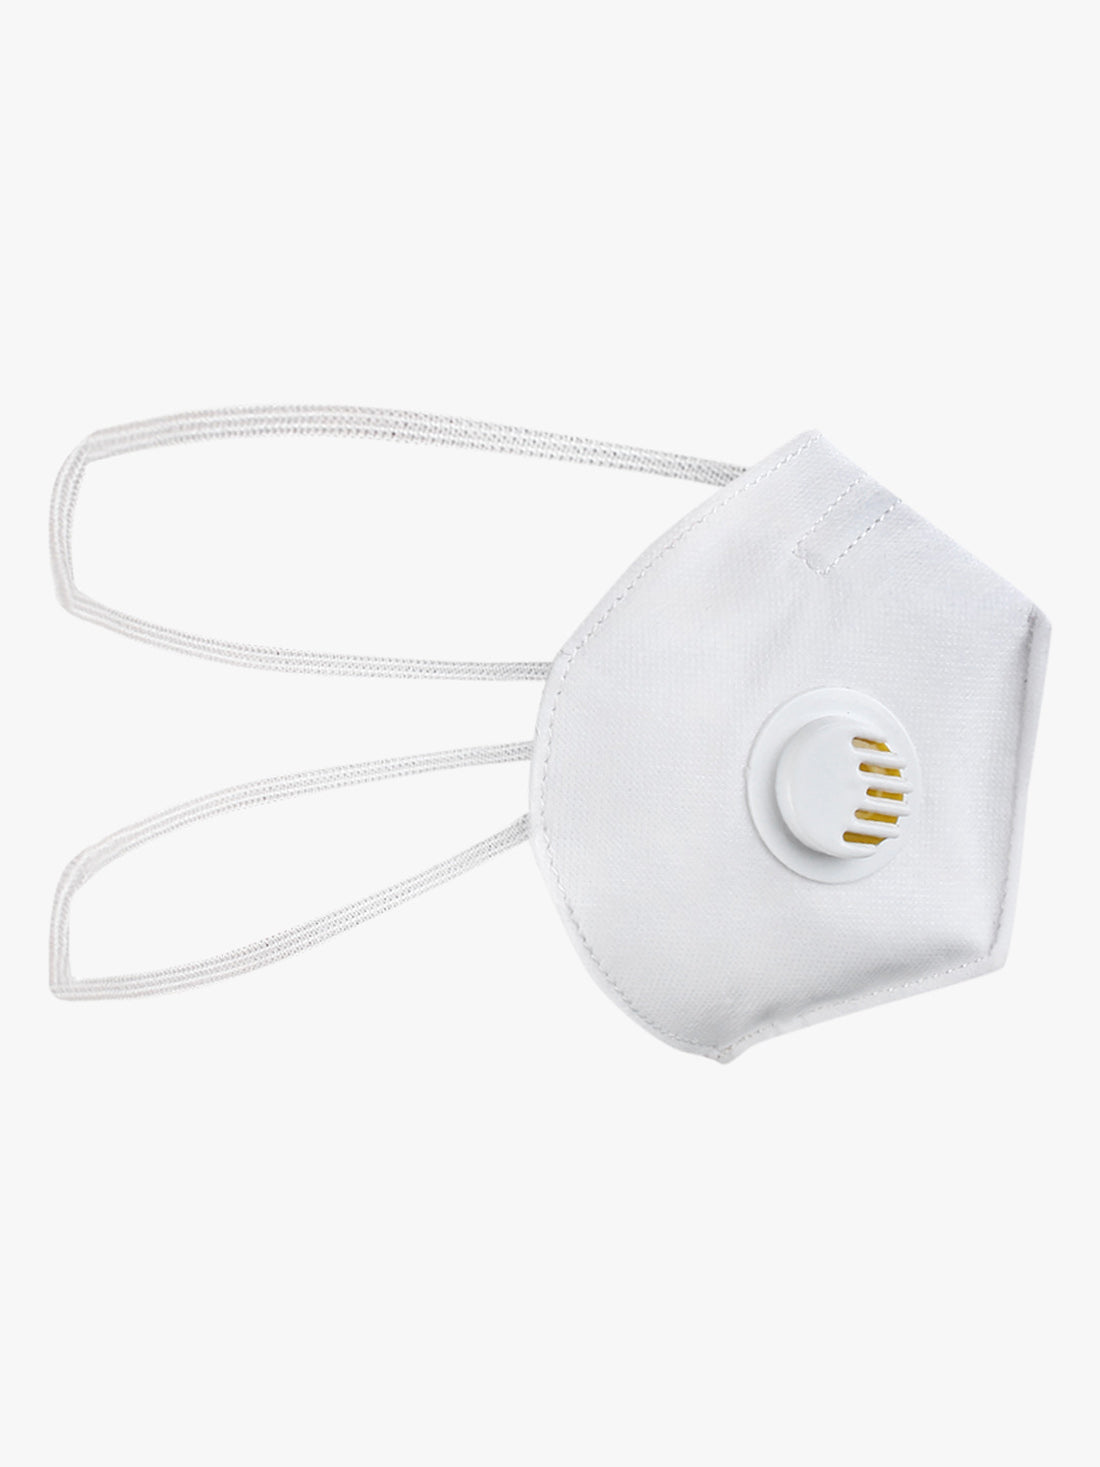 Yelloe 5 layered mask with Respirator (Pack of 3)